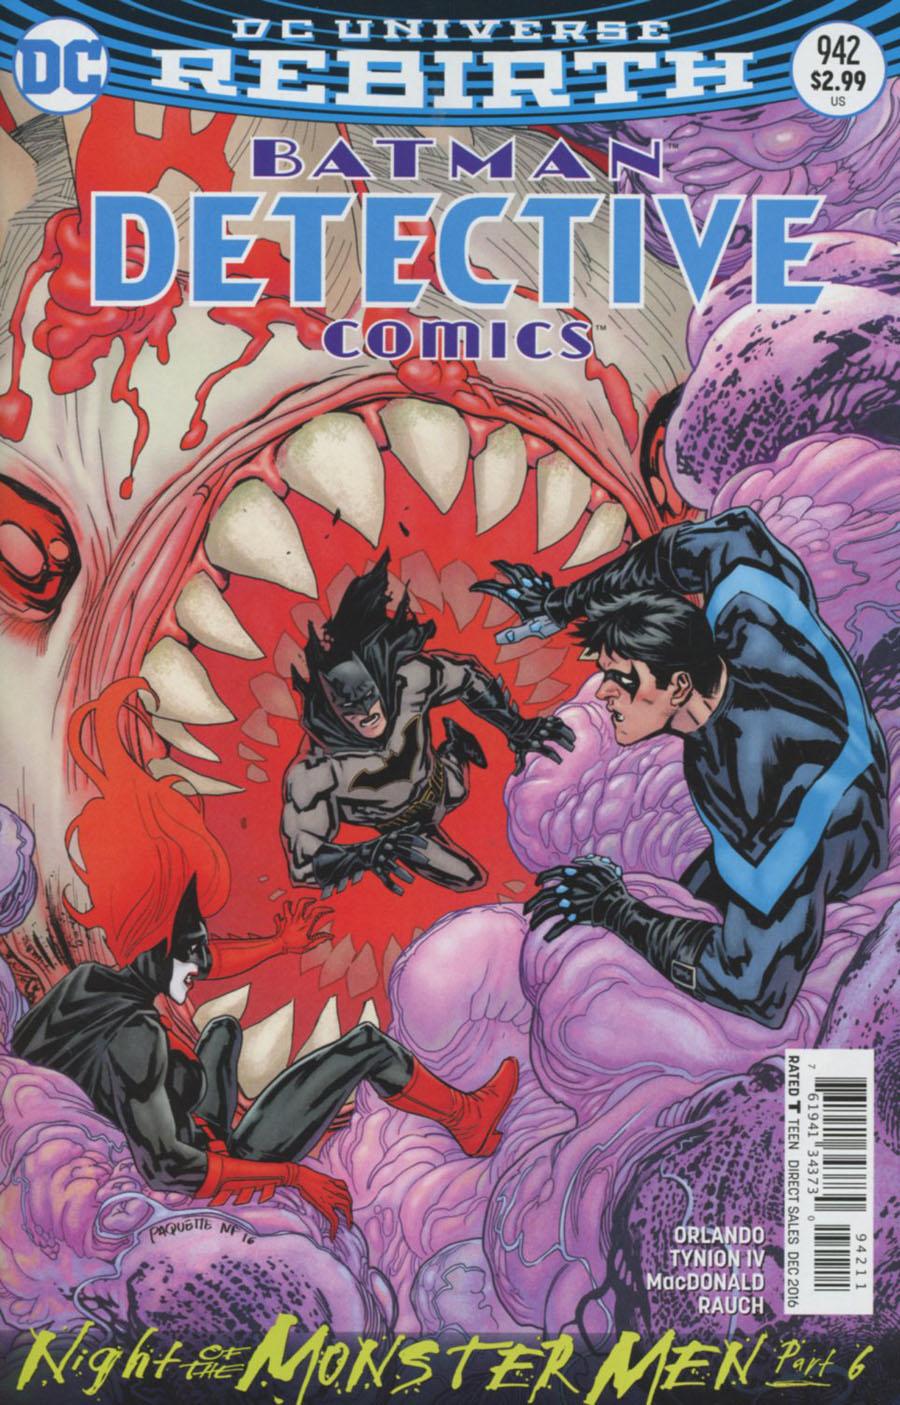 Detective Comics Vol. 2 #942